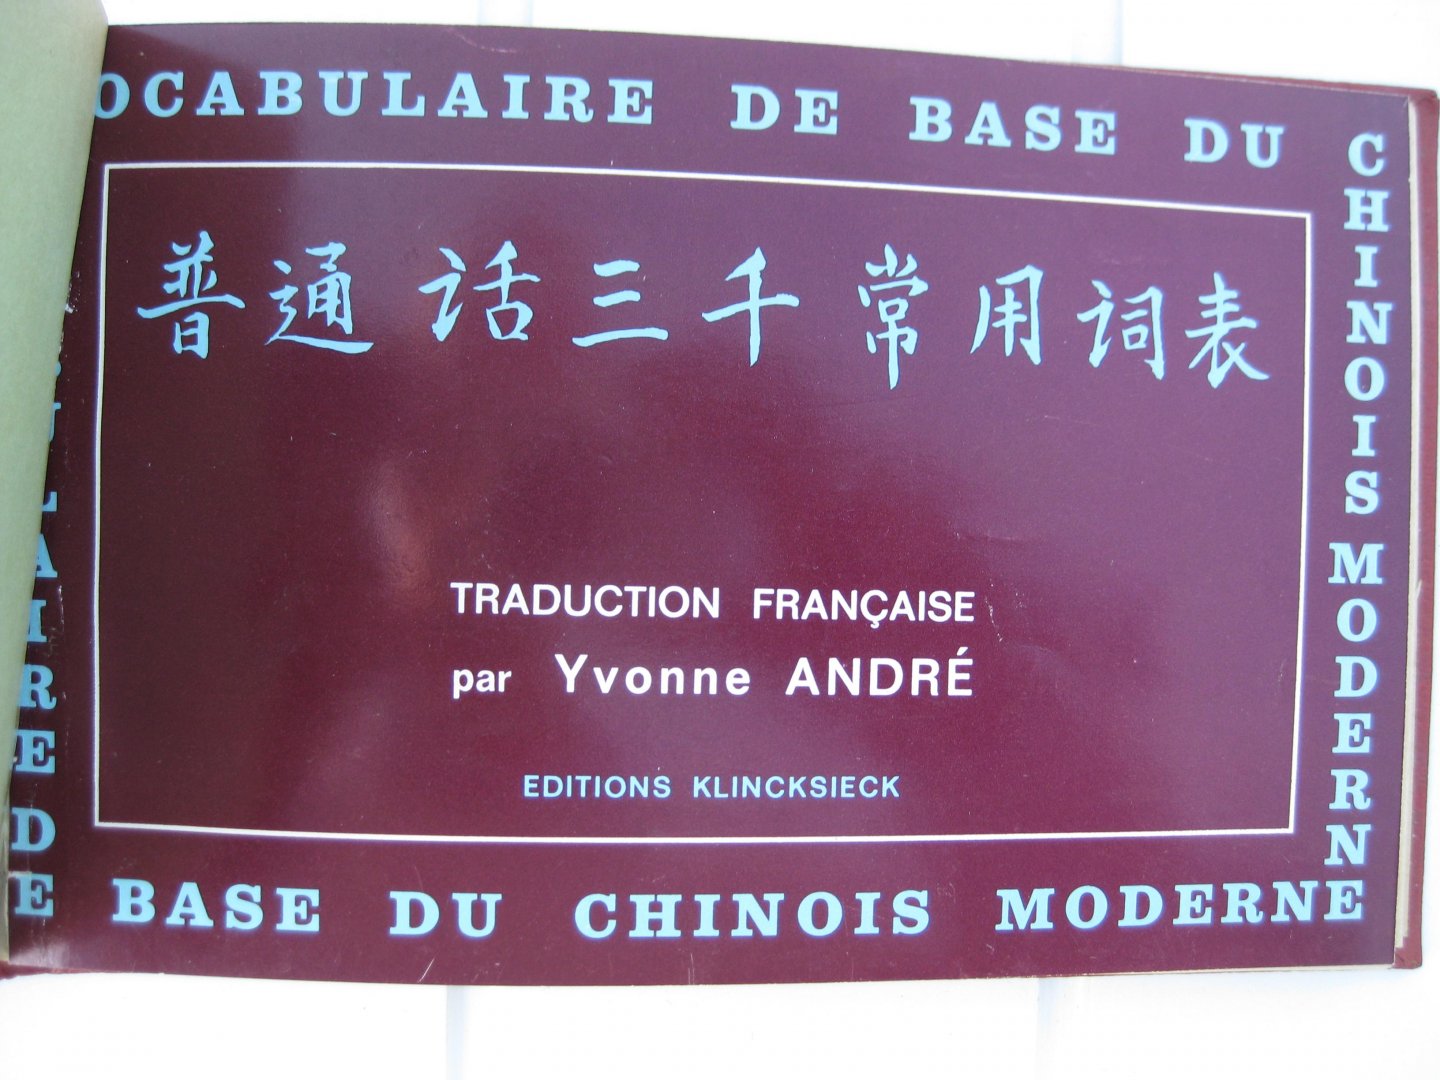 André, Yvonne - Vocabulaire de base du chinois moderne. Chinois-Français.